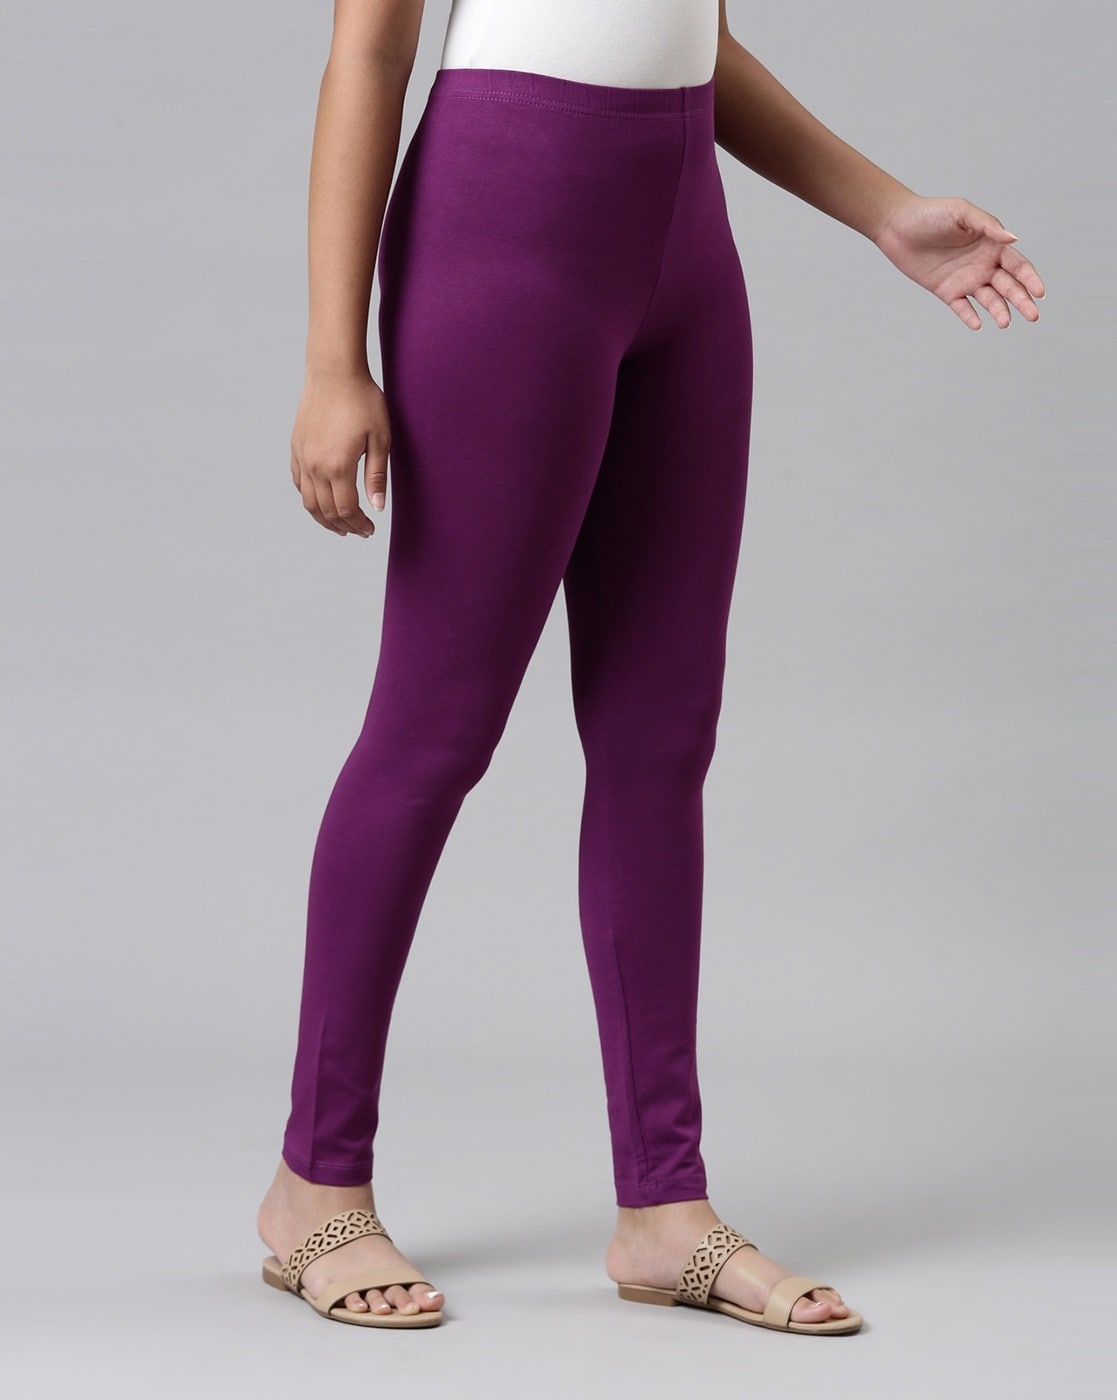 Lululemon Purple leggings